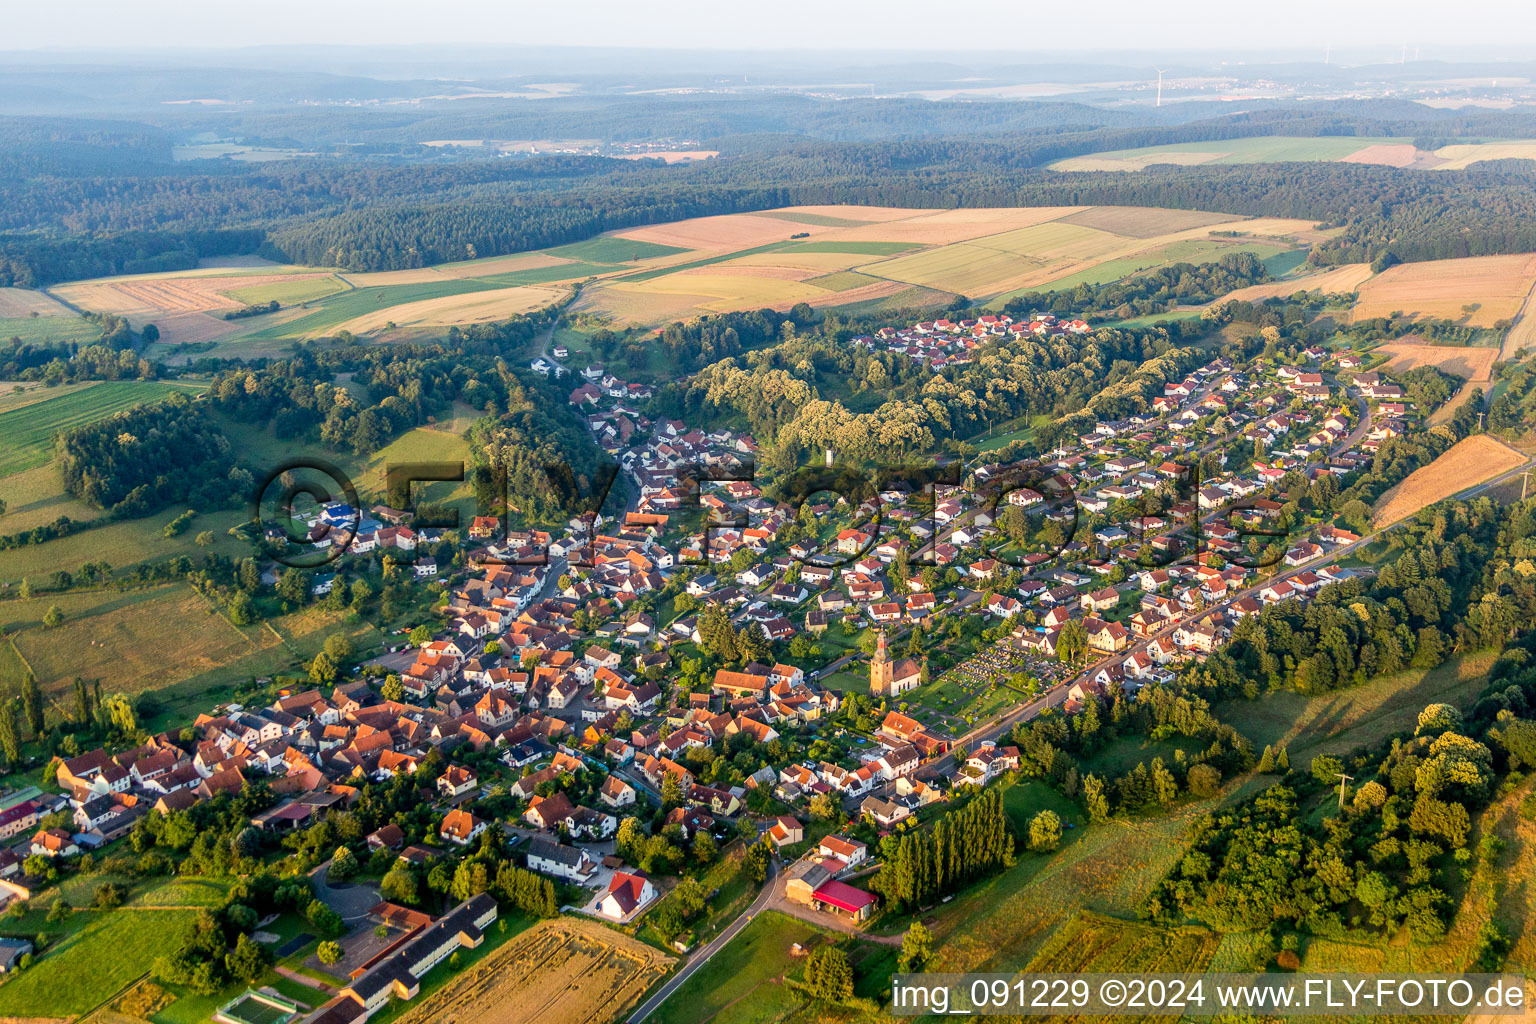 Vue aérienne de Champs agricoles et surfaces utilisables à Sippersfeld dans le département Rhénanie-Palatinat, Allemagne